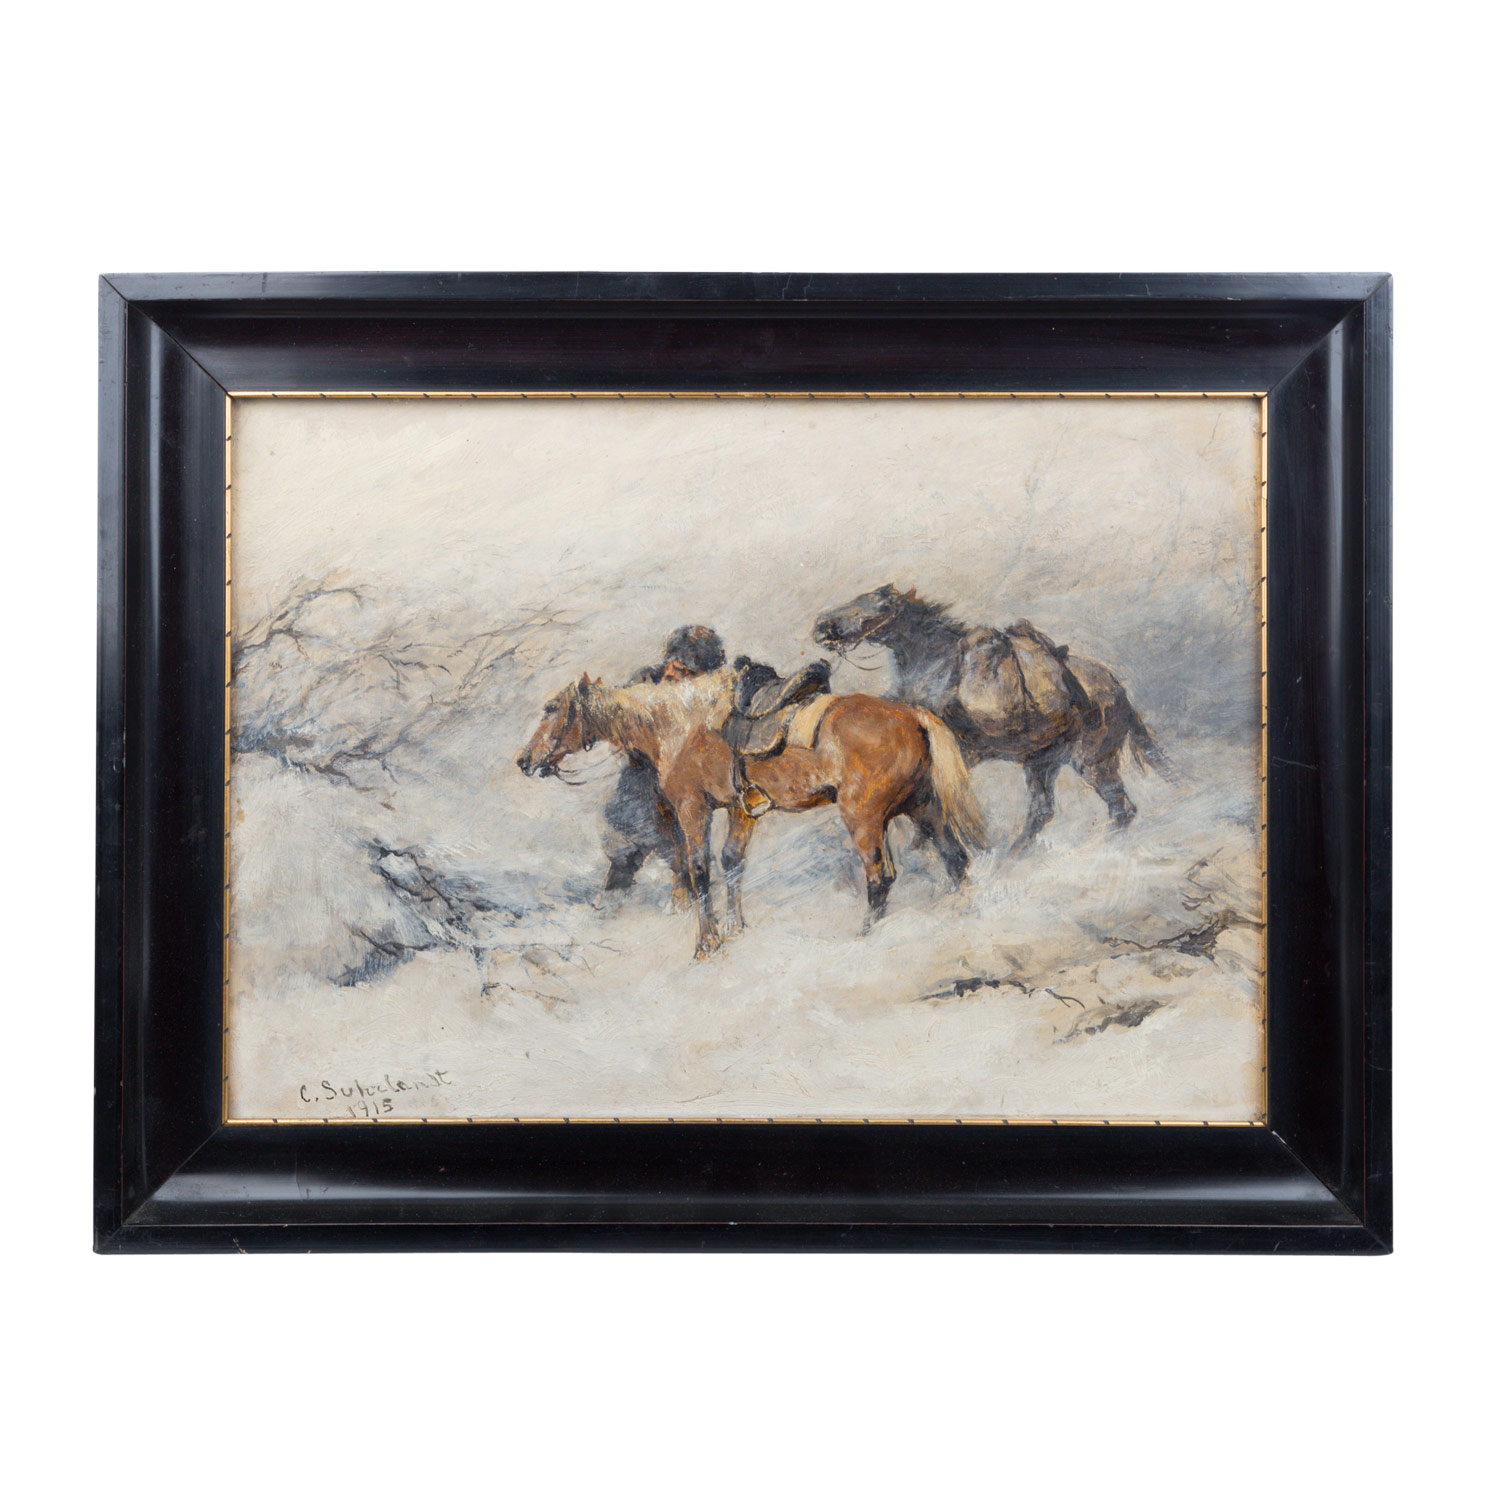 SUHRLANDT, CARL (1828-1919), "Soldat mit Pferden in winterlicher Landschaft "Öl auf Karton, signiert - Image 2 of 4